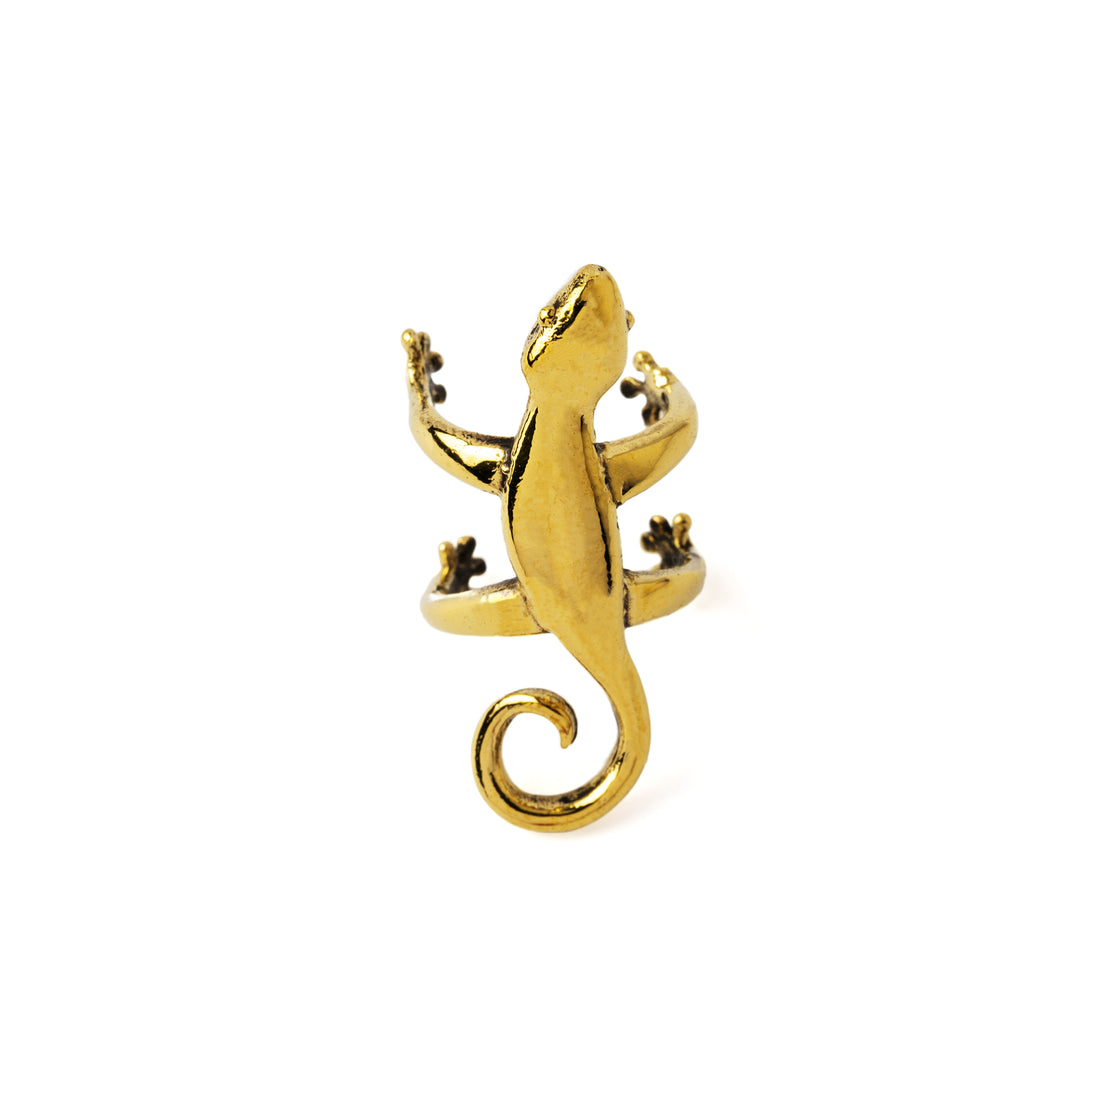 Golden Salamander Ear Cuff frontal view